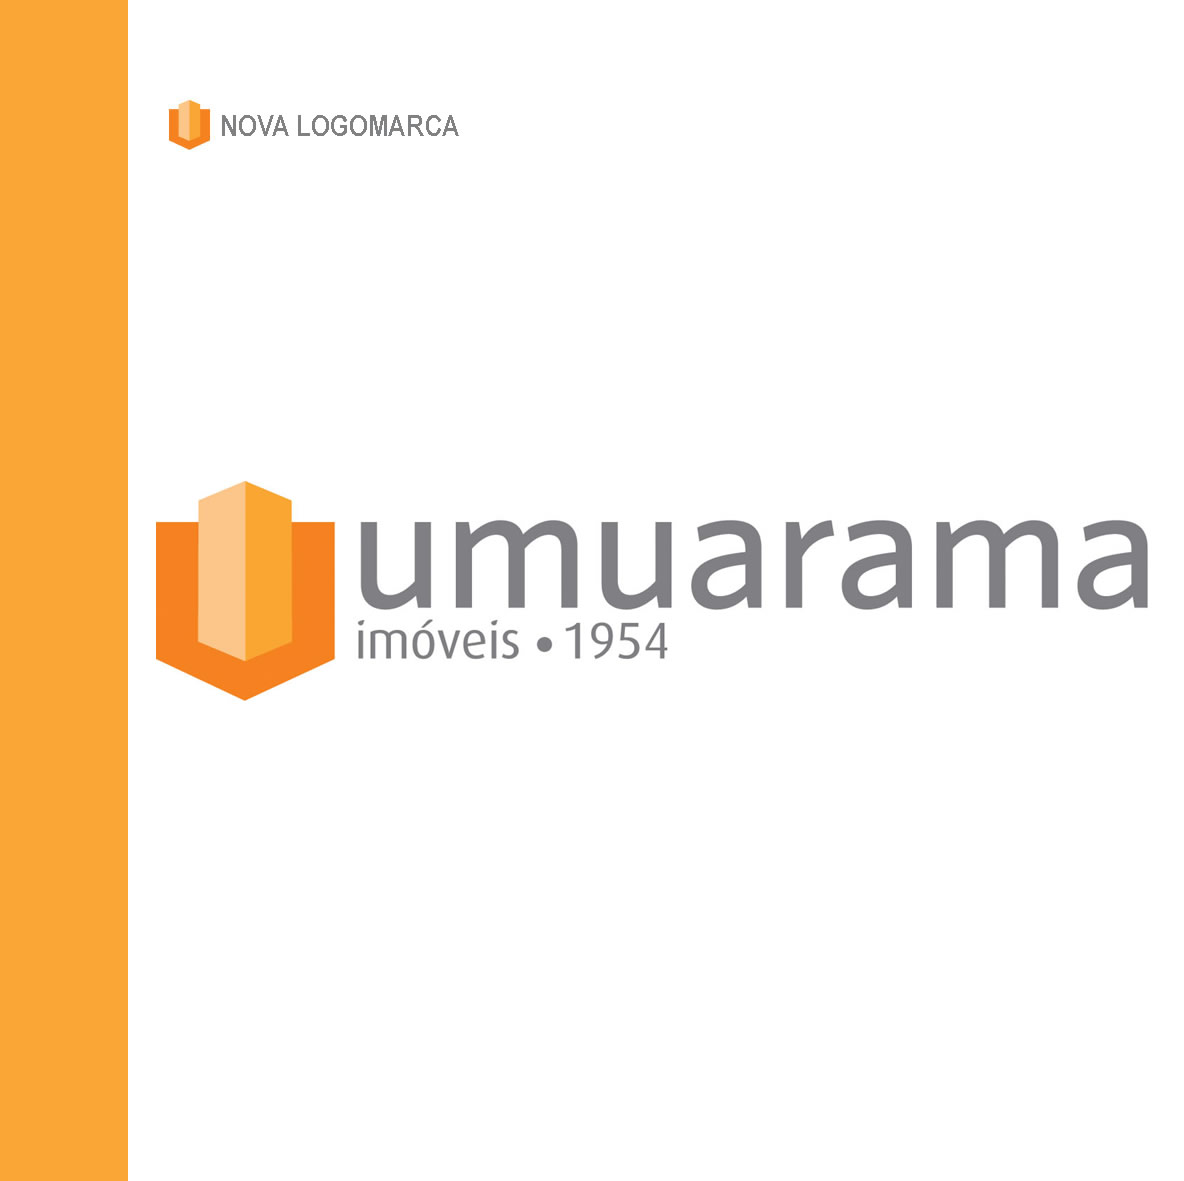 Nova logomarca Umuarama